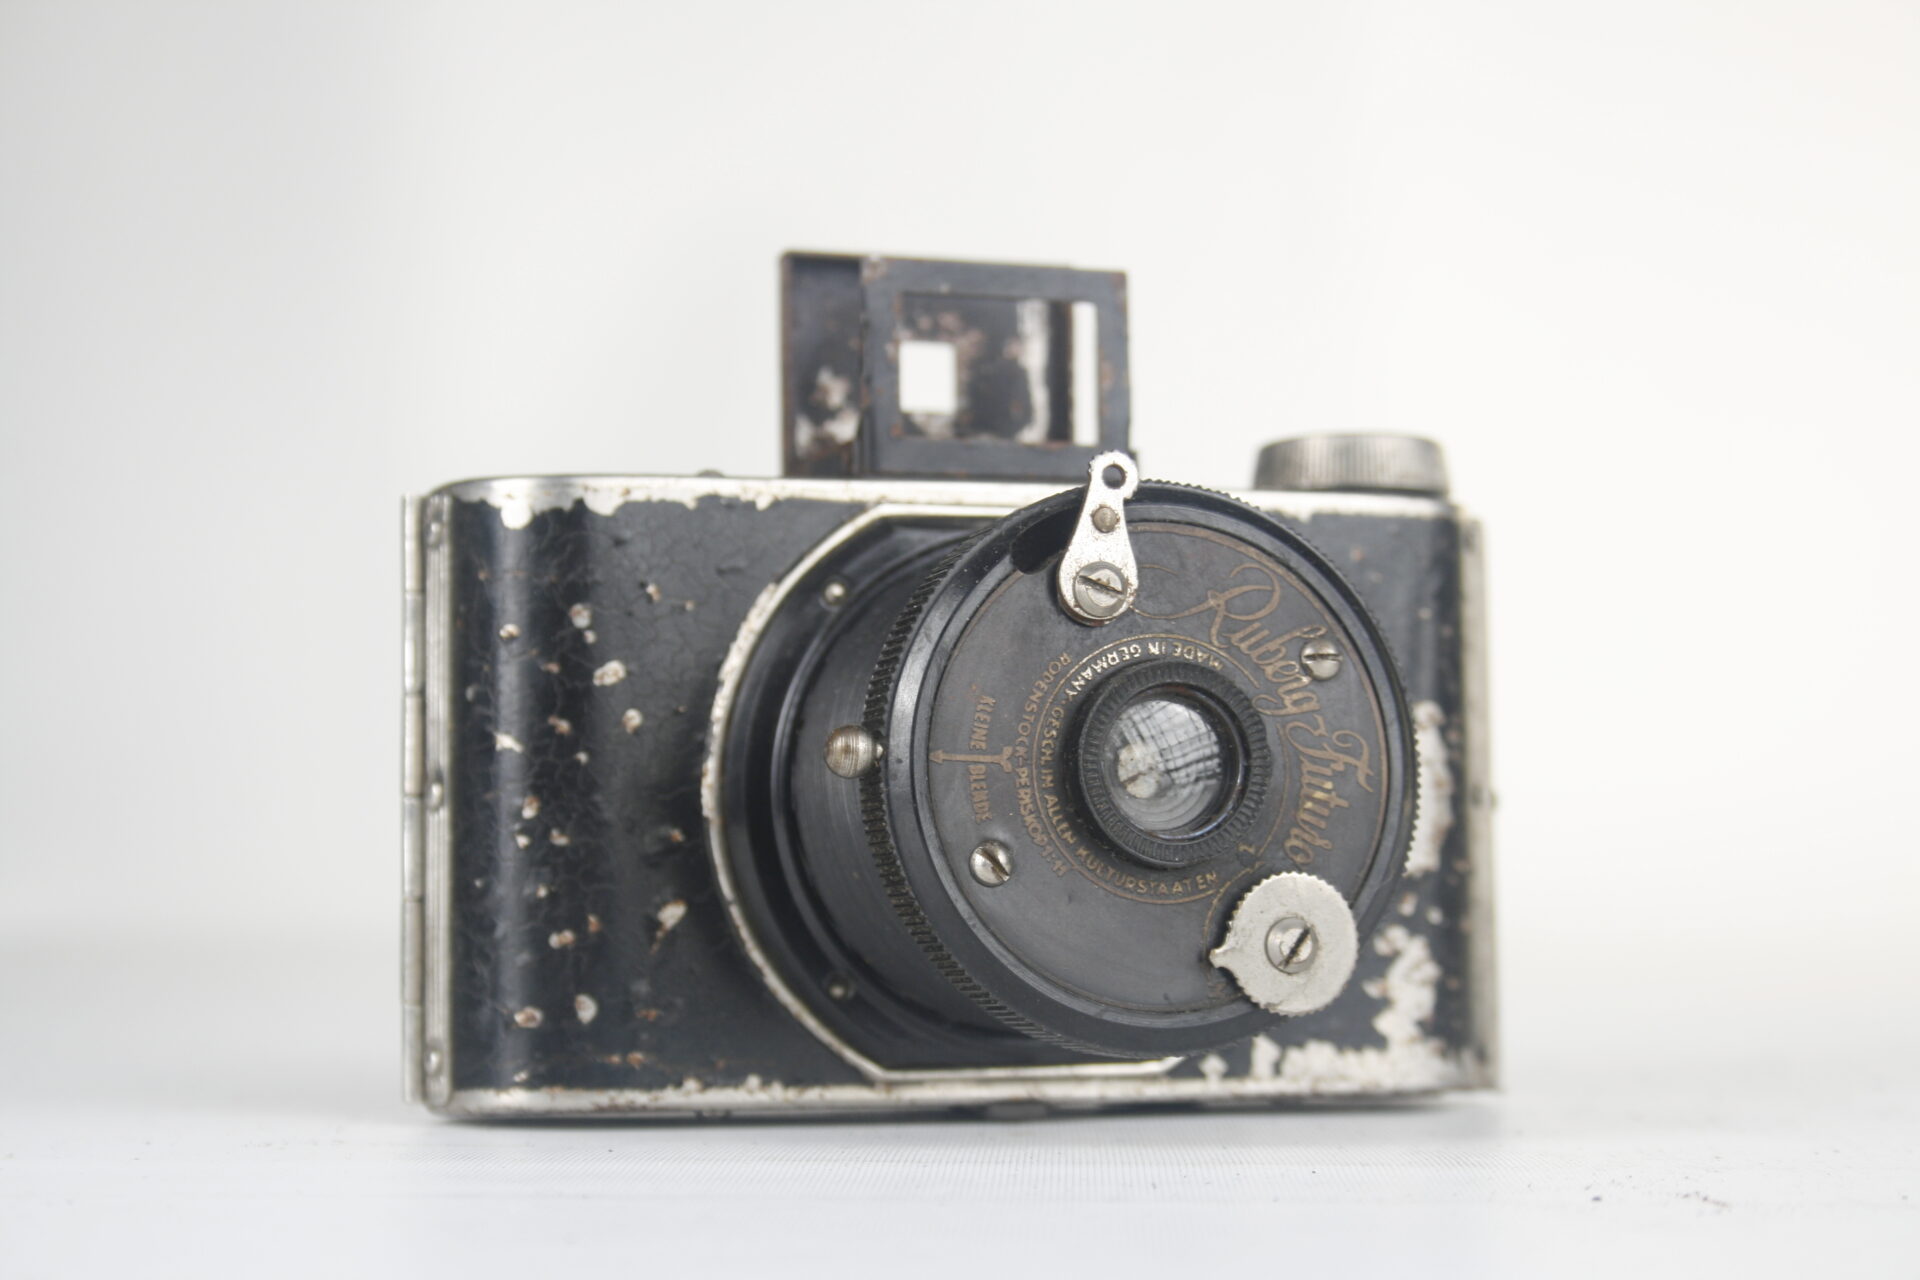 Ruberg-Futuro bakkelieten camera. 127 film. 1933. Duitsland